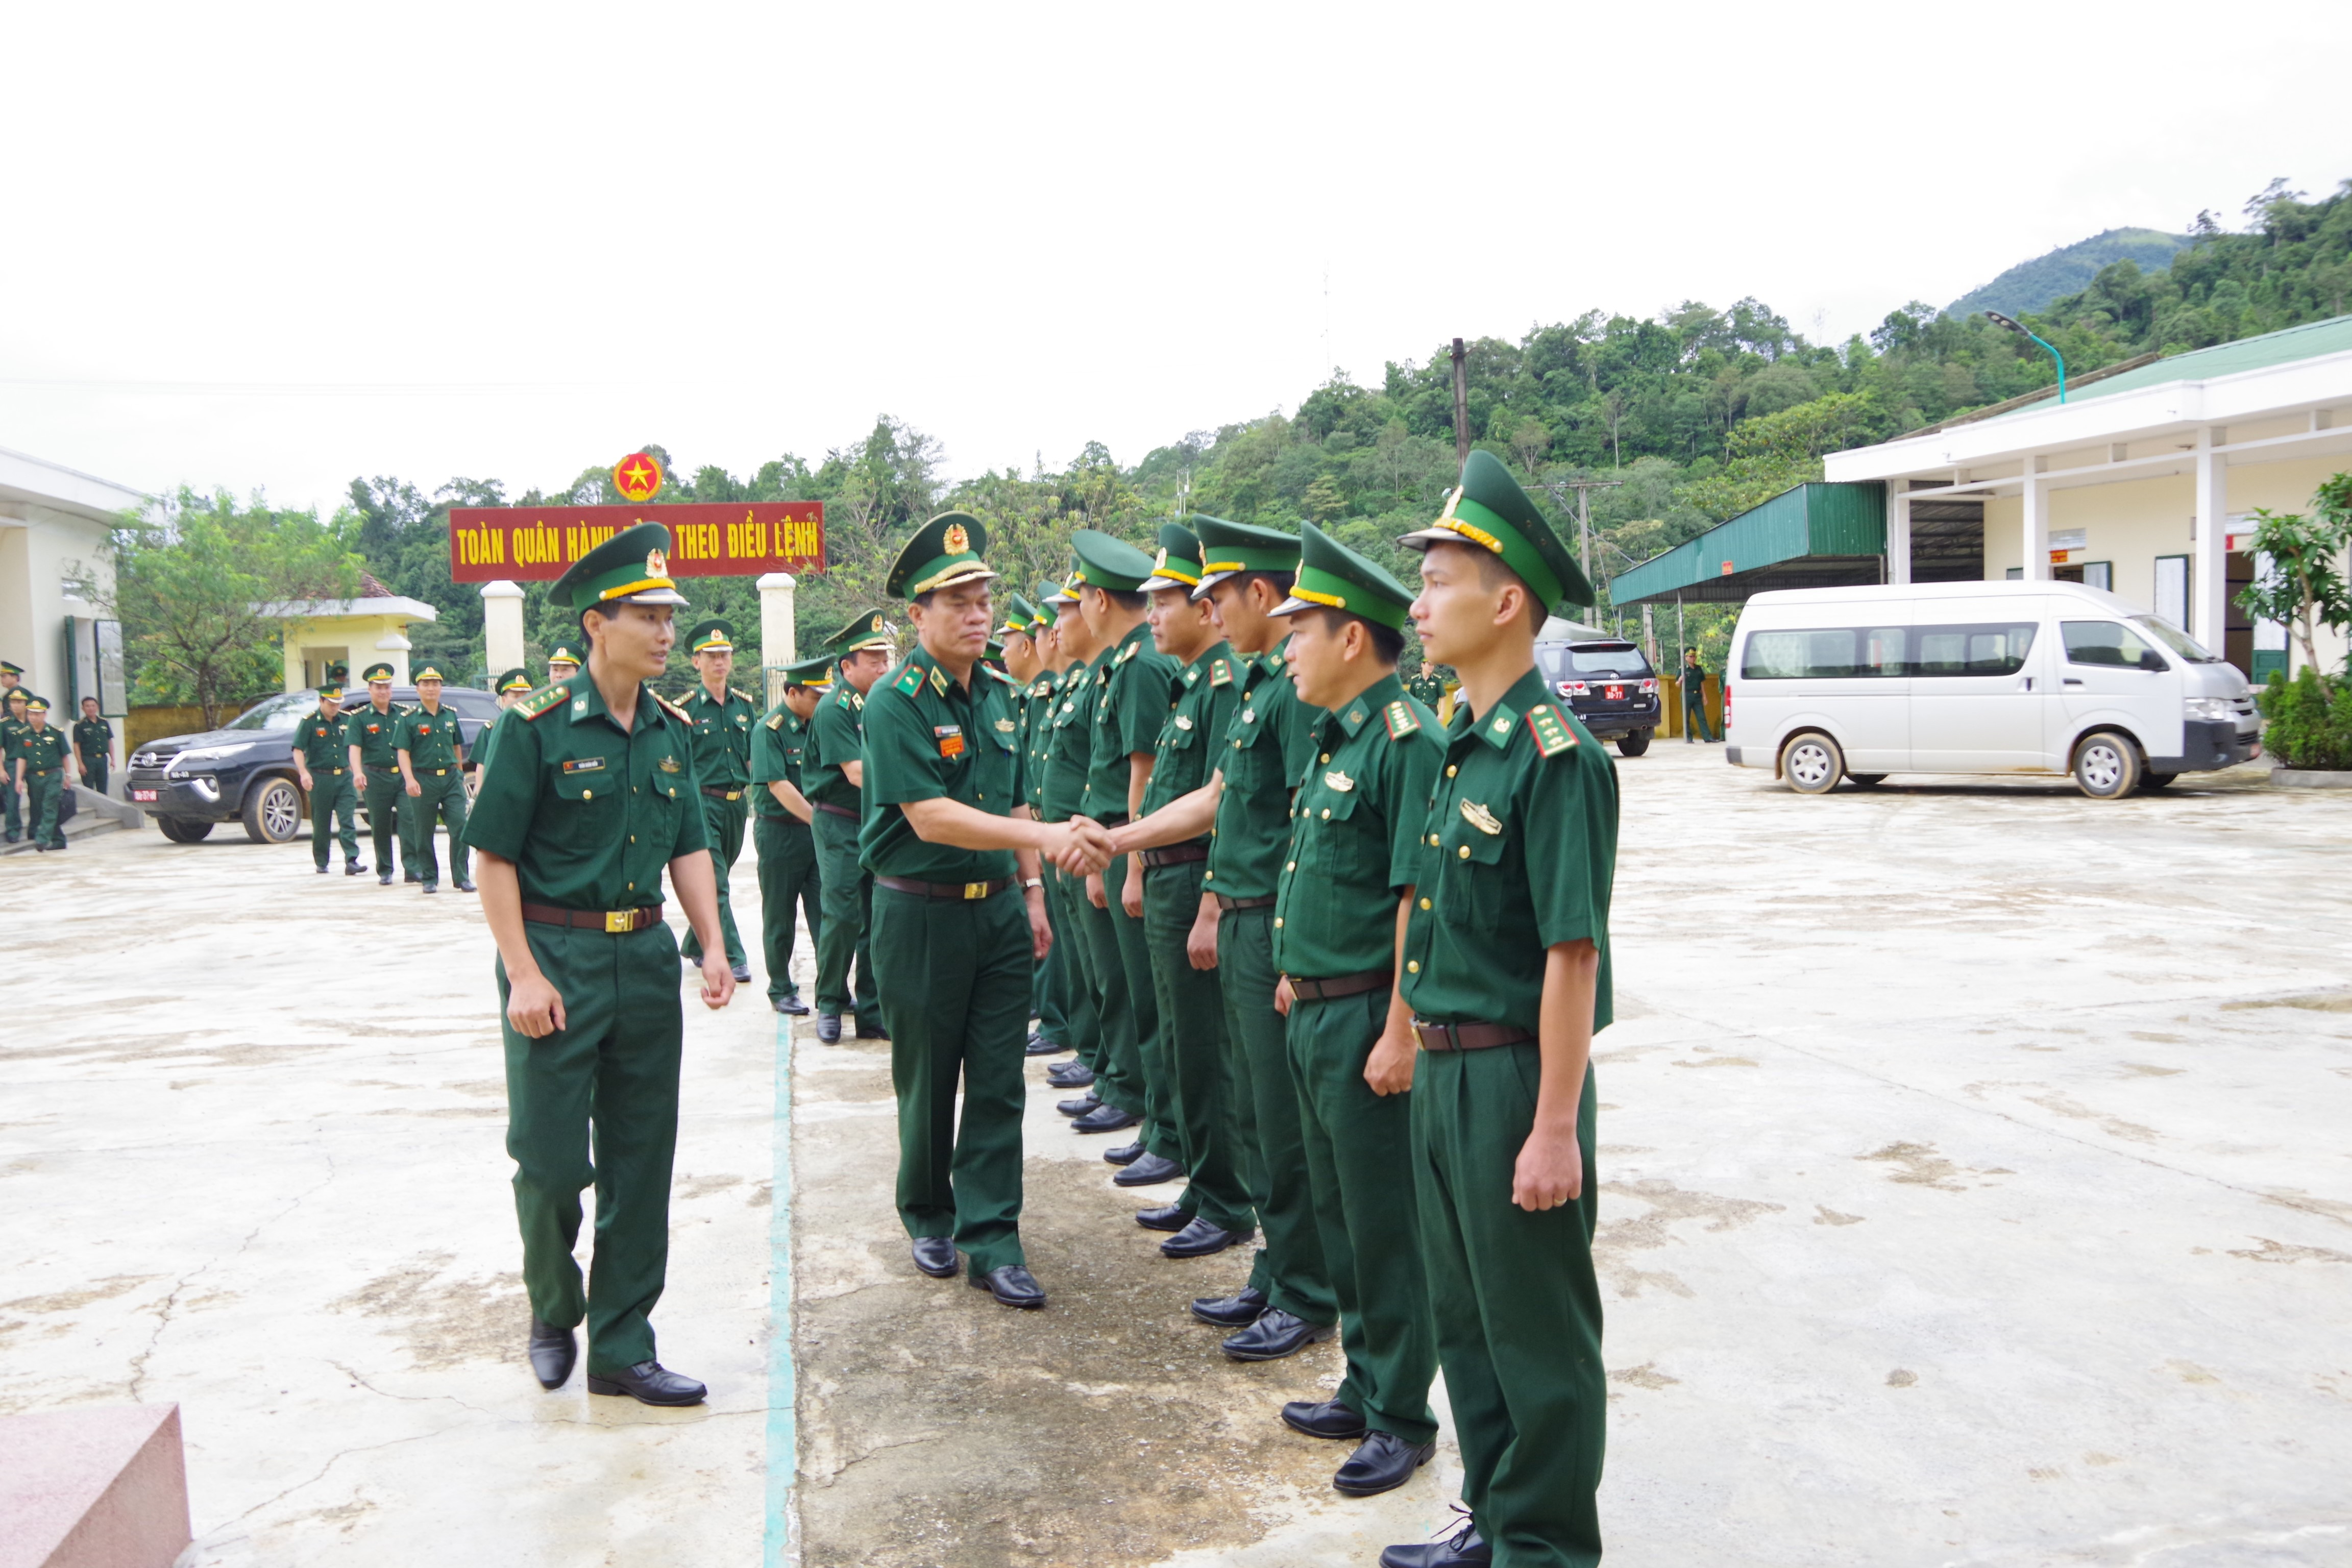 Thiếu tướng Hoàng Đăng Nhiễu cùng đoàn công tác đến kiểm tra tại Đồn Biên phòng Na Ngoi.